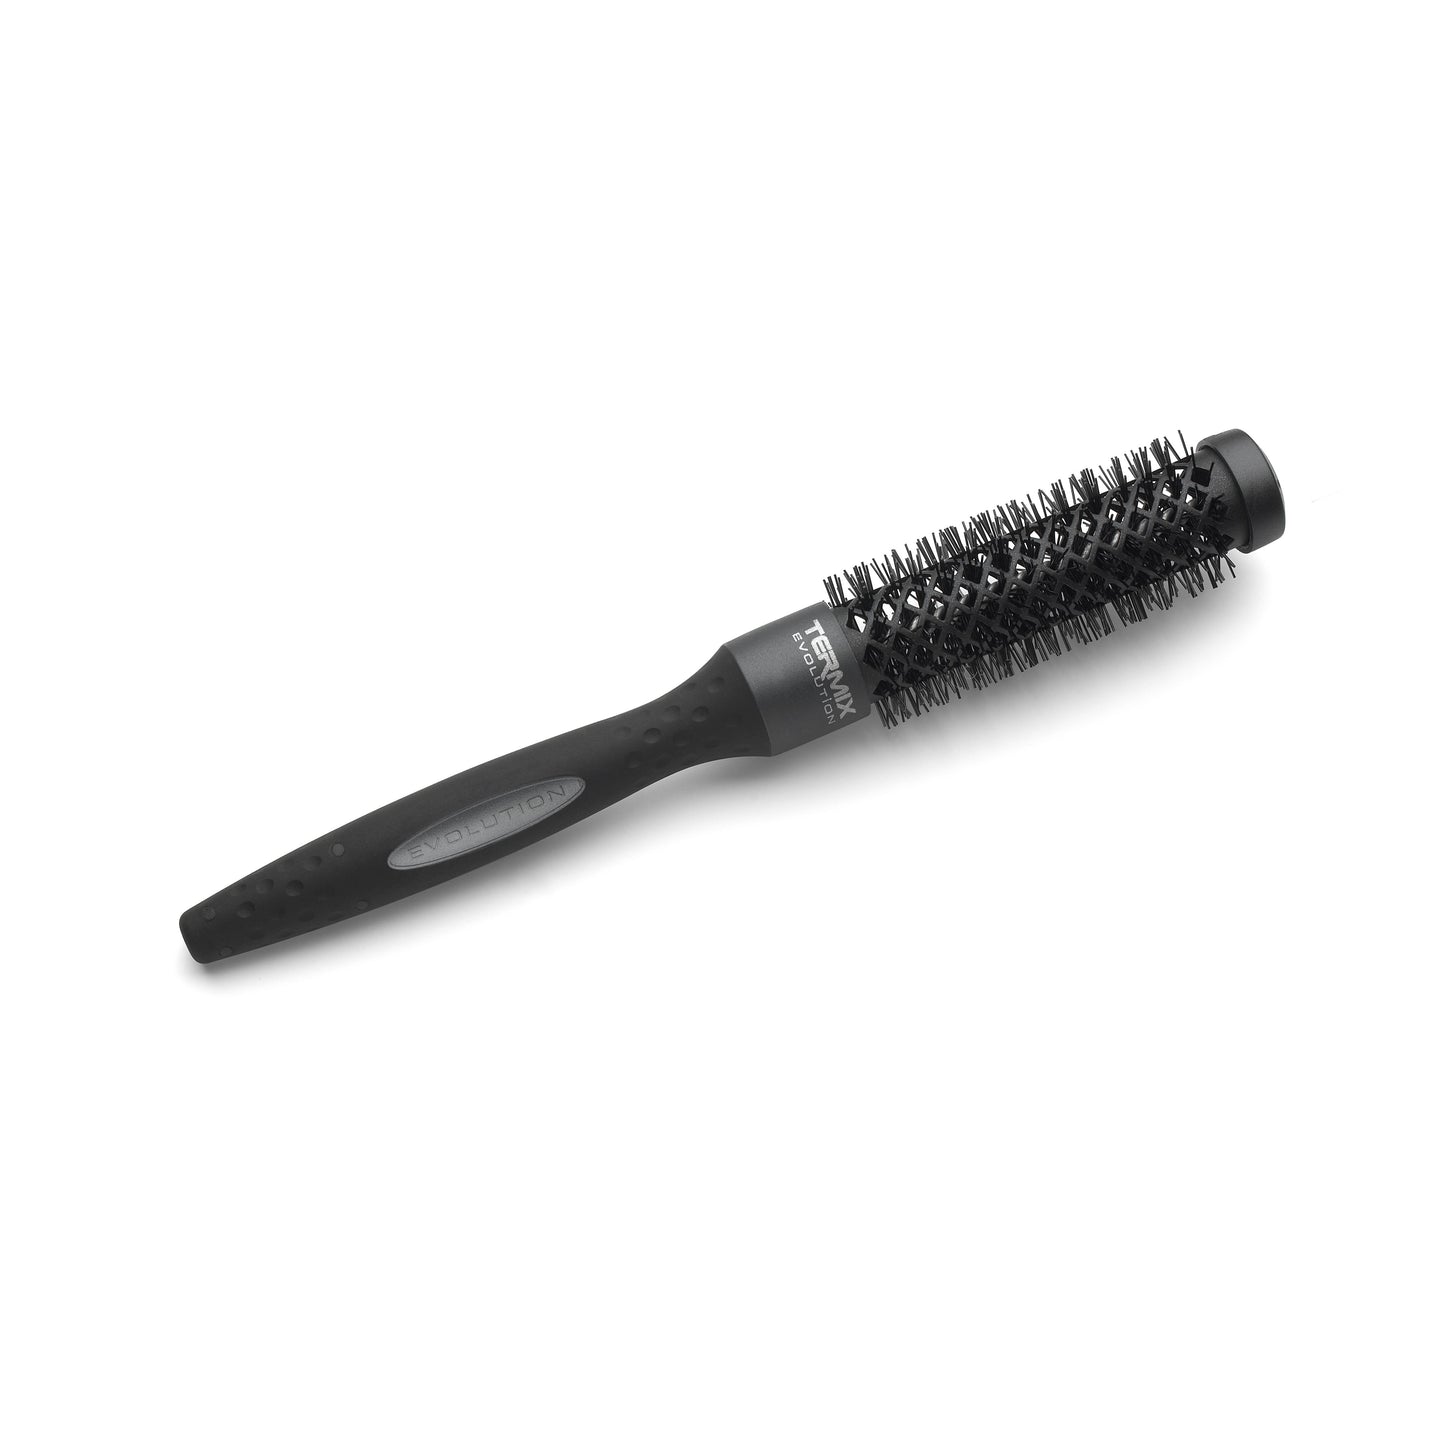 Termix Evolution Styling Brush 23mm BASIC for Normal Hair